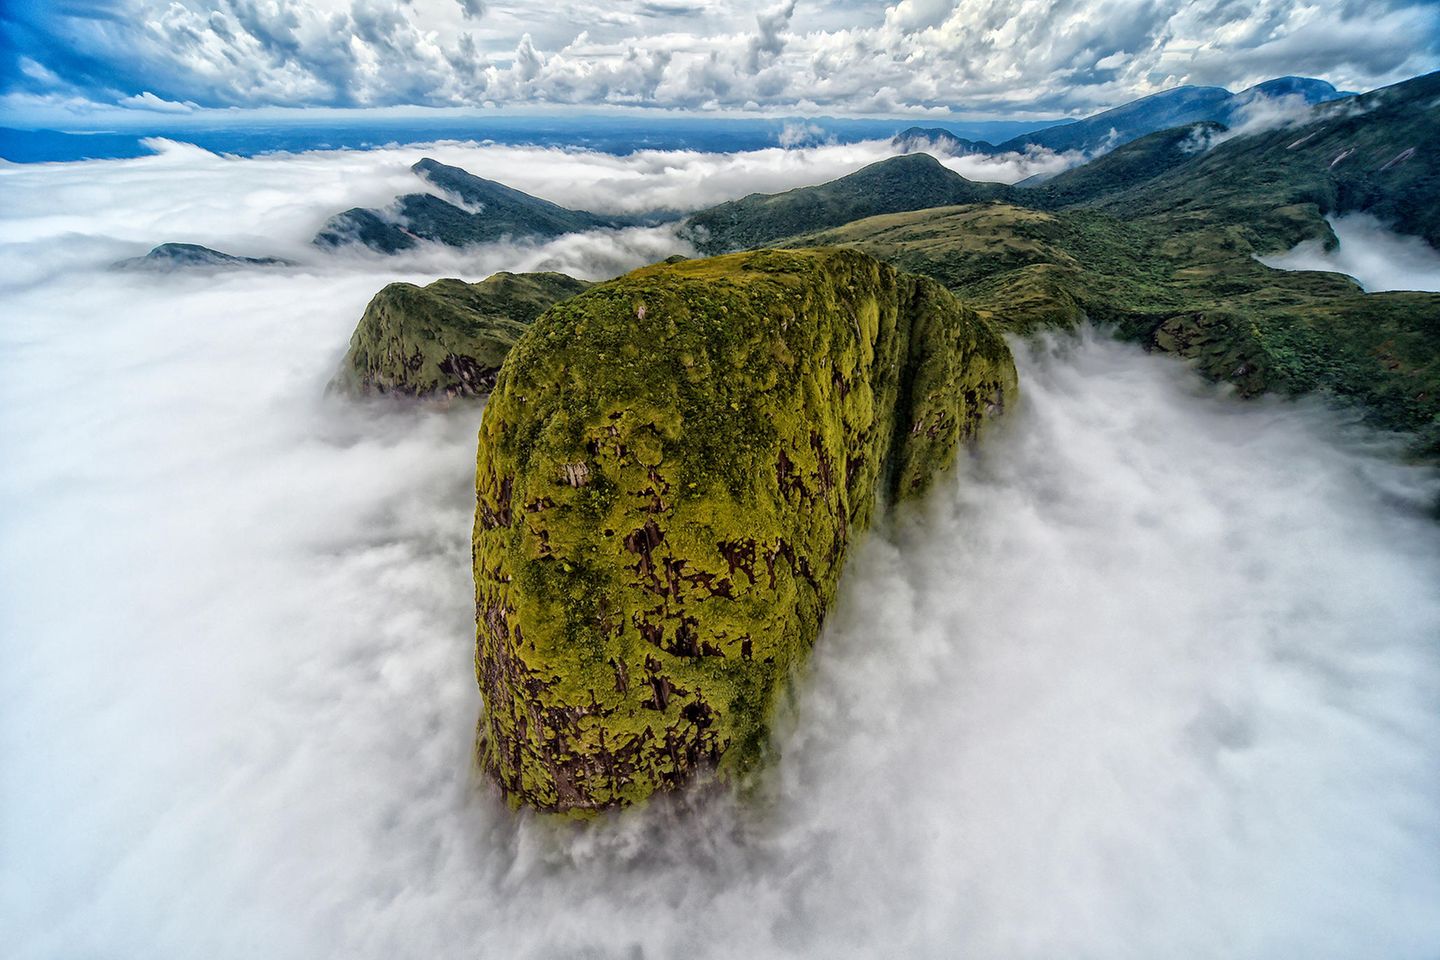 Wie ein Ungetüm ragt der ovale Bergrücken aus der Wolkendecke hervor. Bei einem Helikopterflug durch das Serra do Mar, ein 1500 Kilometer langer Gebirgszug im Südosten Brasiliens, fängt Denis Ferreira Netto diese mystische Szenerie ein und wird damit Zweitplatzierter in der Kategorie „Landscape“